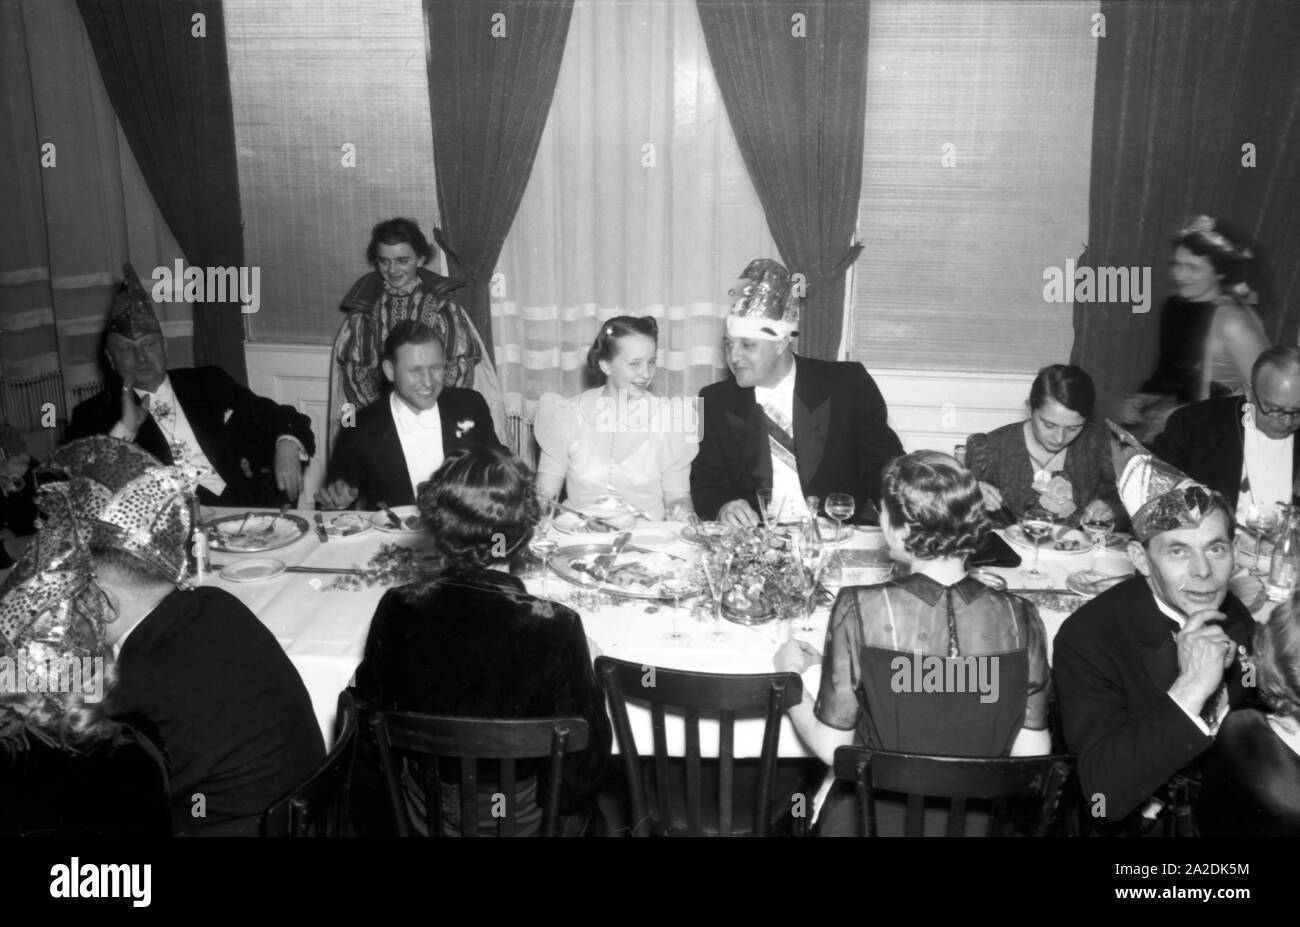 Offizielle und Granden der Mainzer Fastnacht feiern die Kampagne 1938. Funzionari e presidenti celebra il carnevale 1938 presso la città di Magonza. Foto Stock